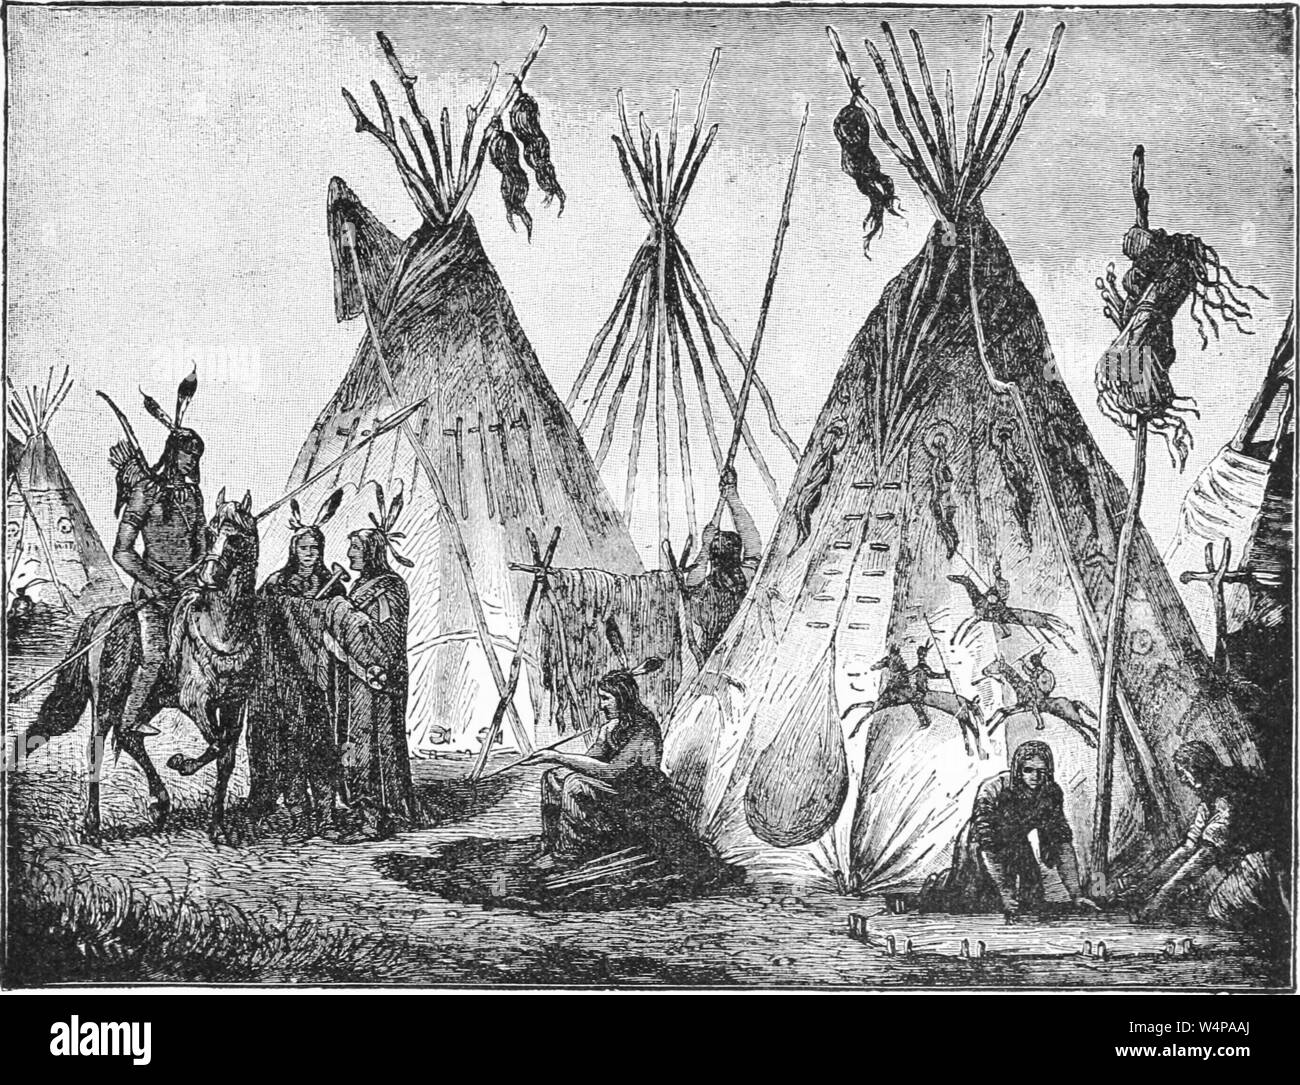 Dibujo de los indios fotografías e imágenes de alta resolución - Alamy